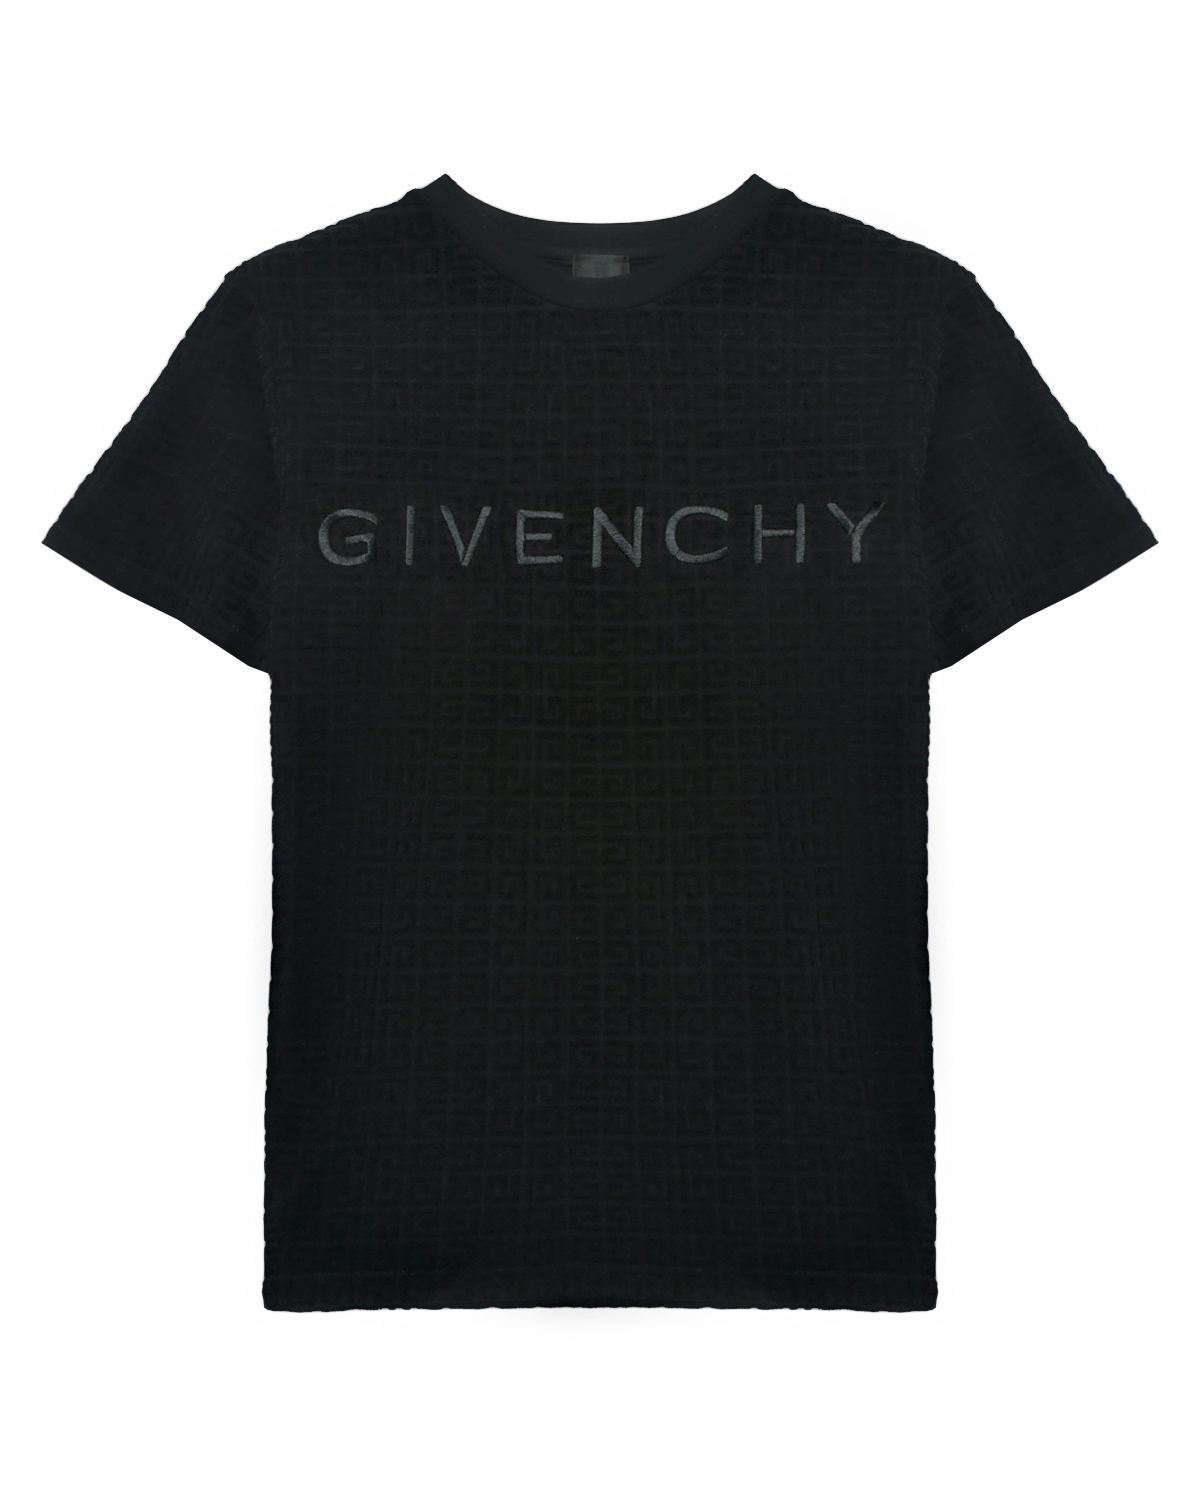 Футболка велюровая со сплошным лого Givenchy, размер 140, цвет нет цвета